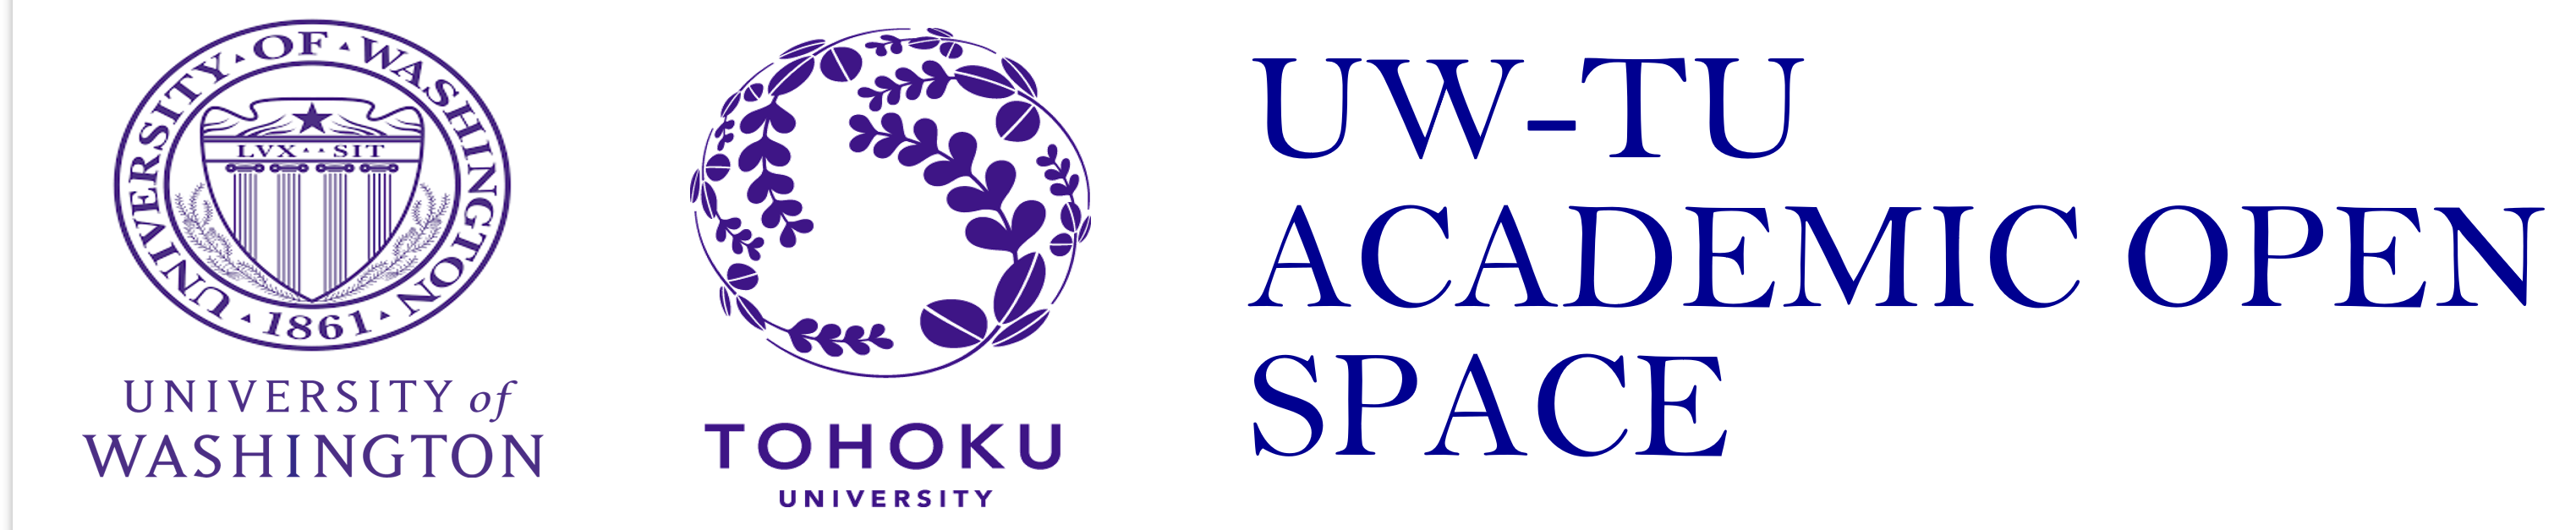 UW-TU Academic Open Space